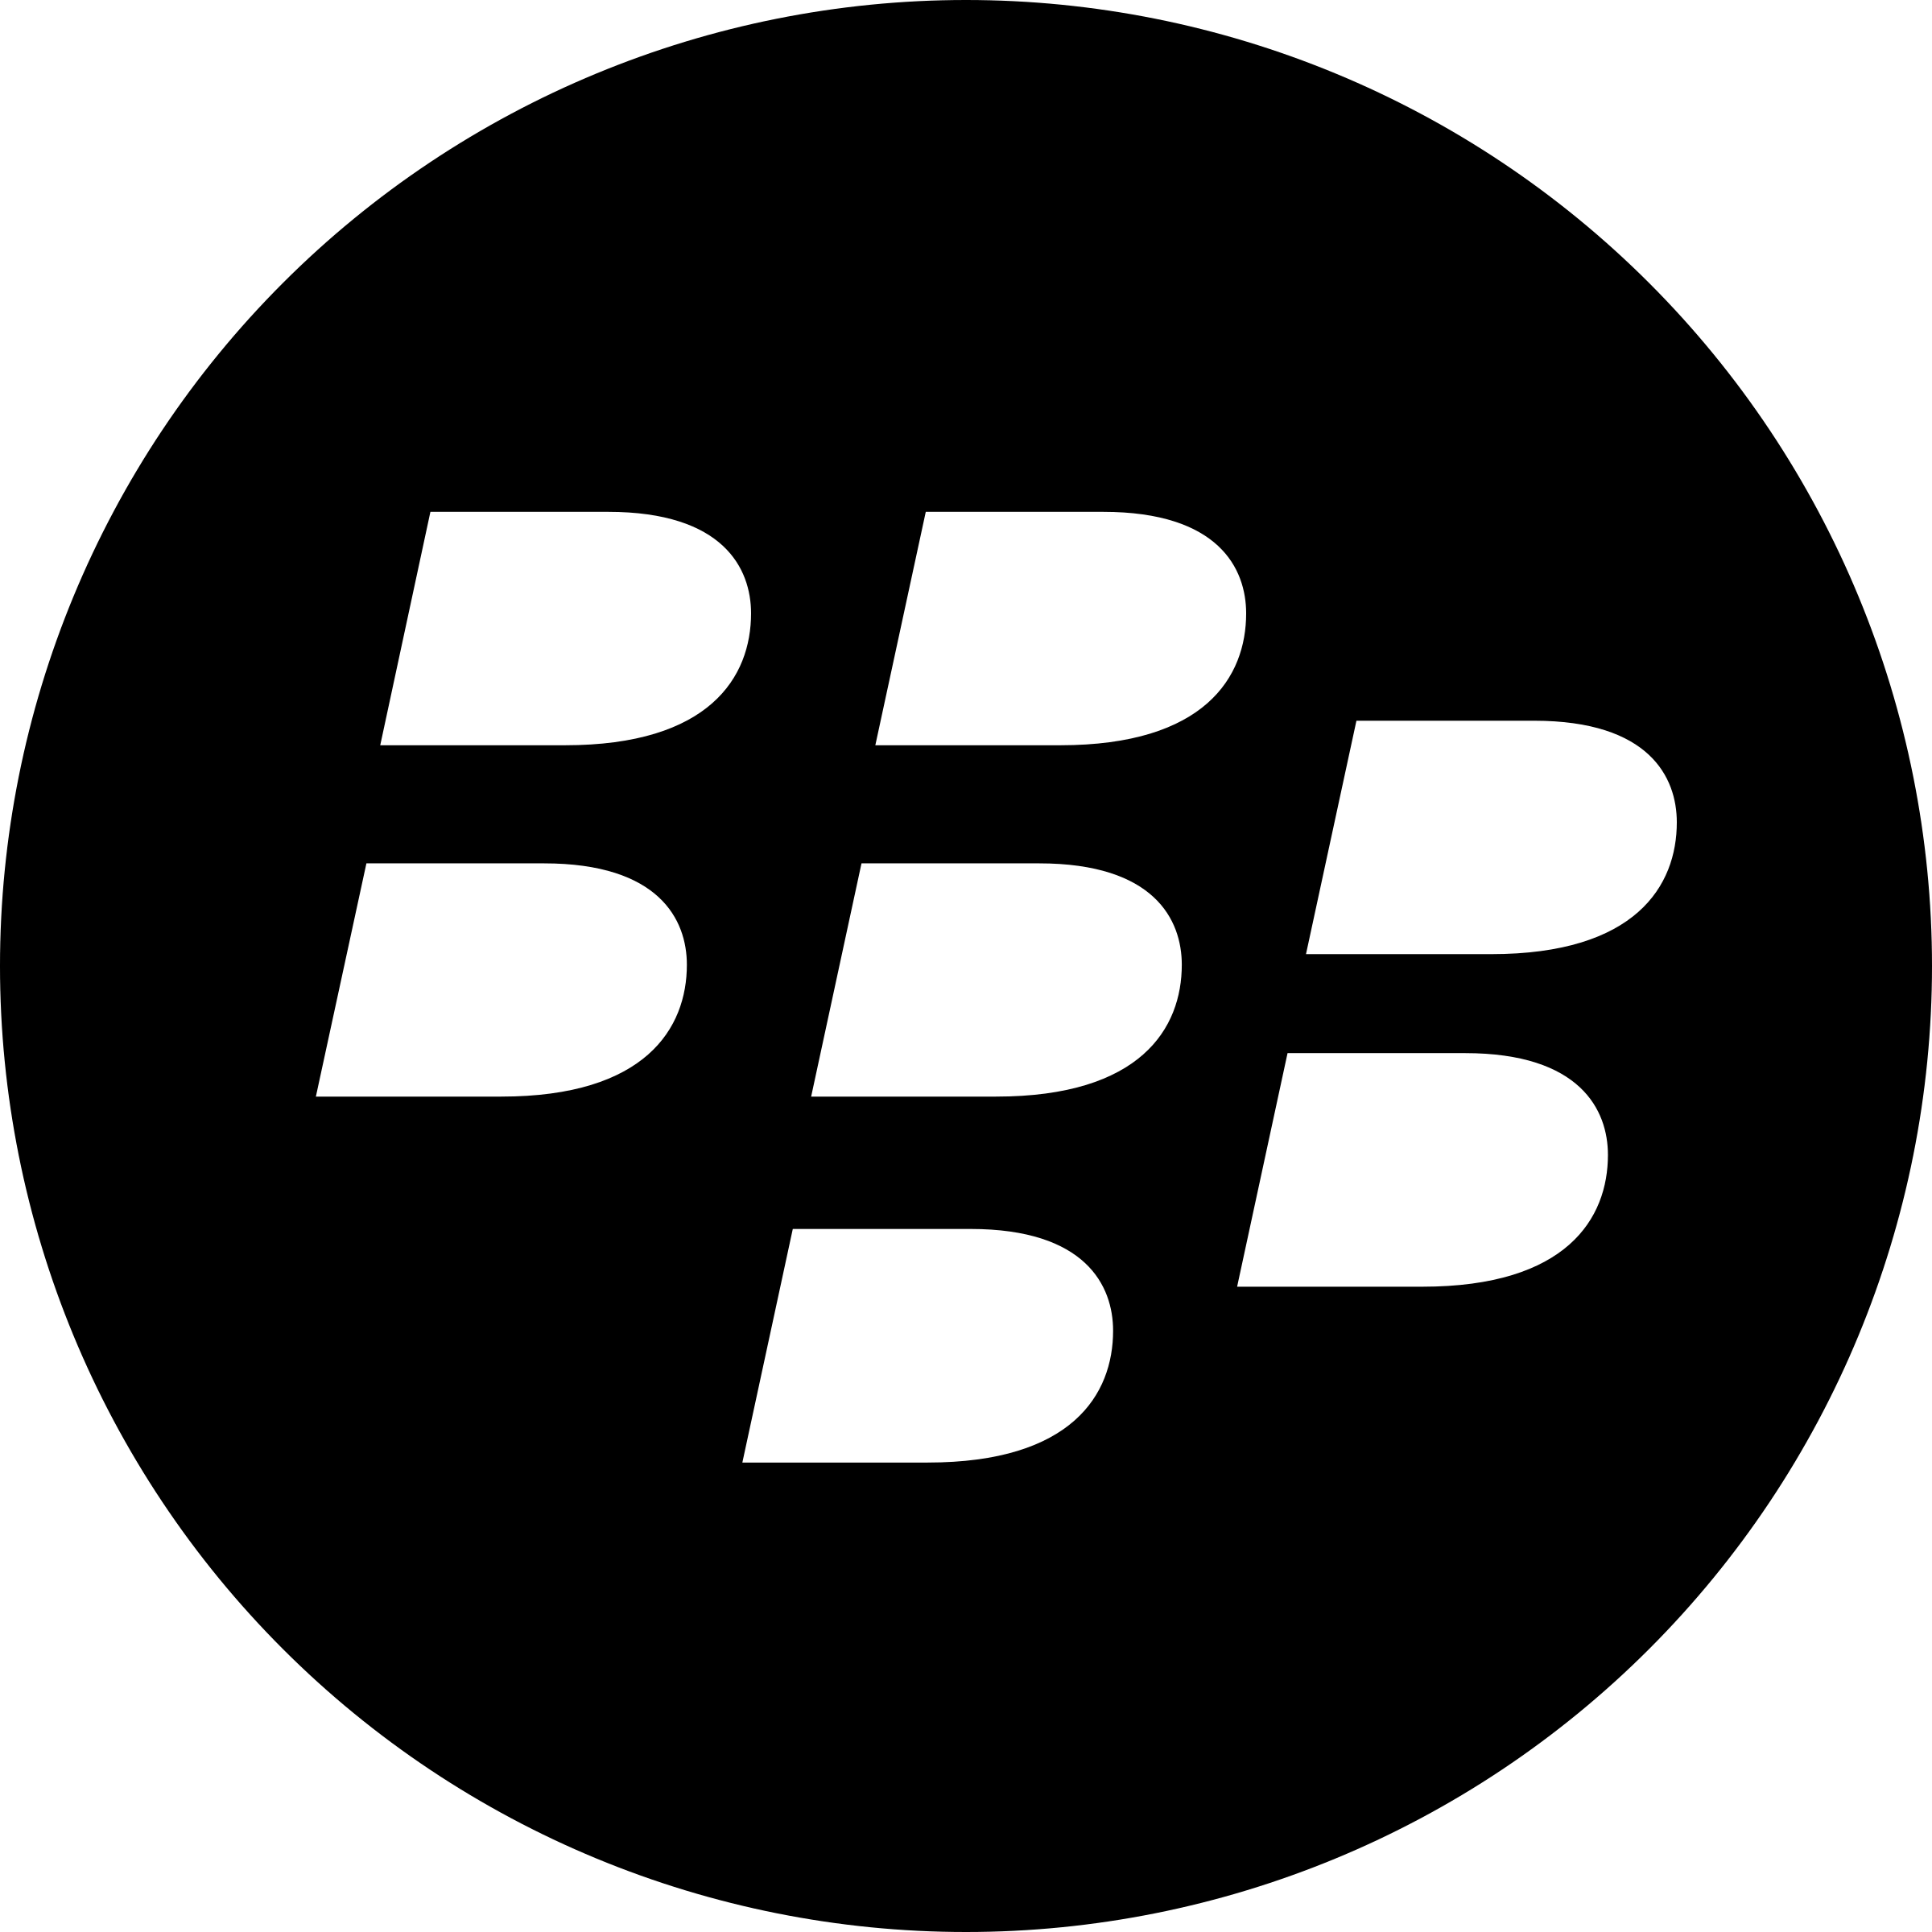 BBM Logo - BBM BlackBerry Messenger Logo PNG Transparent & SVG Vector